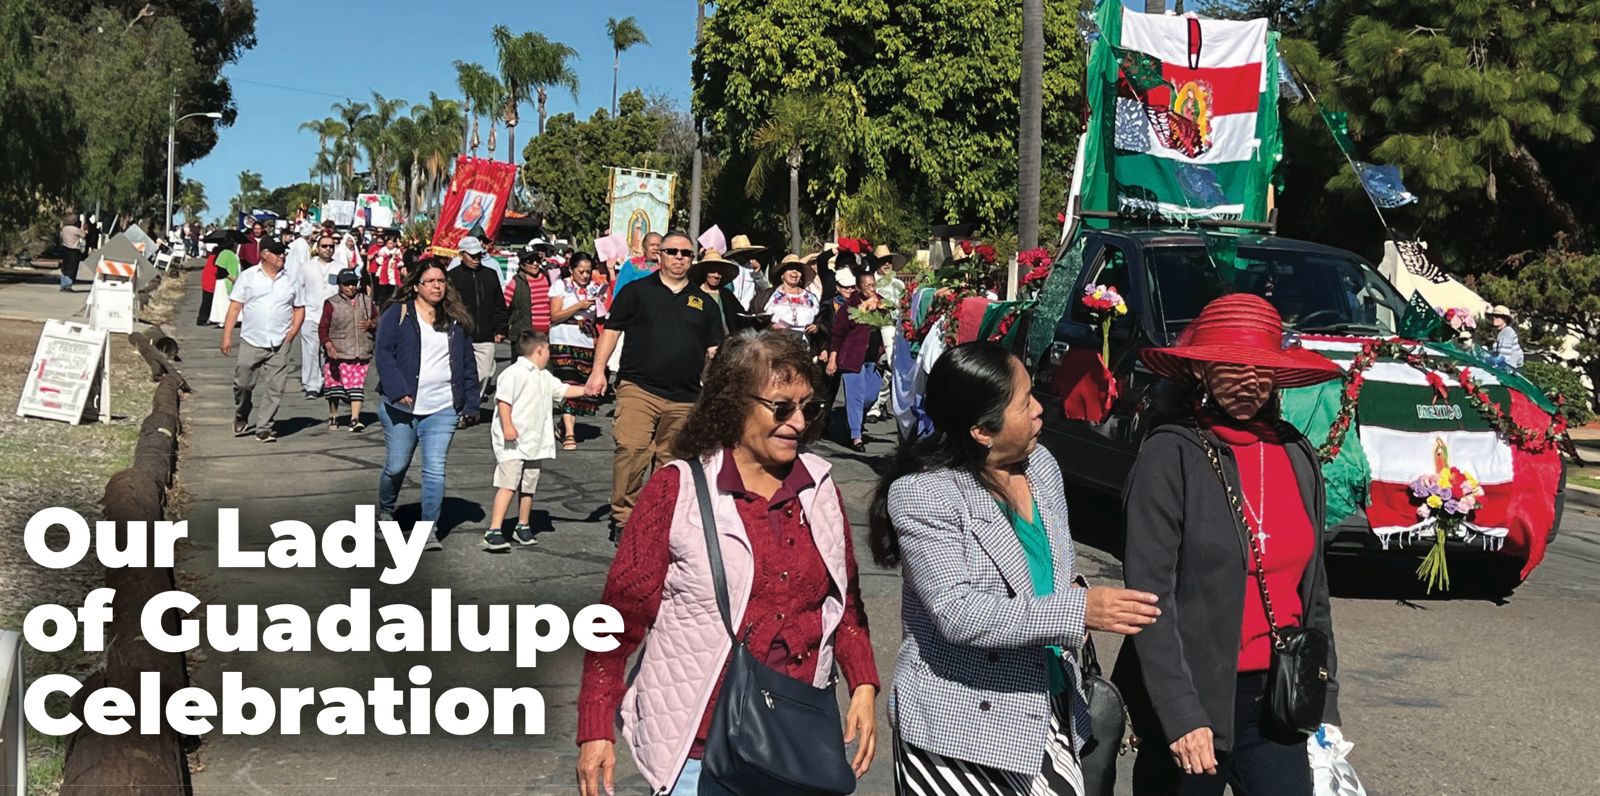 Celebrará San Diego a “nuestra señora de Guadalupe”